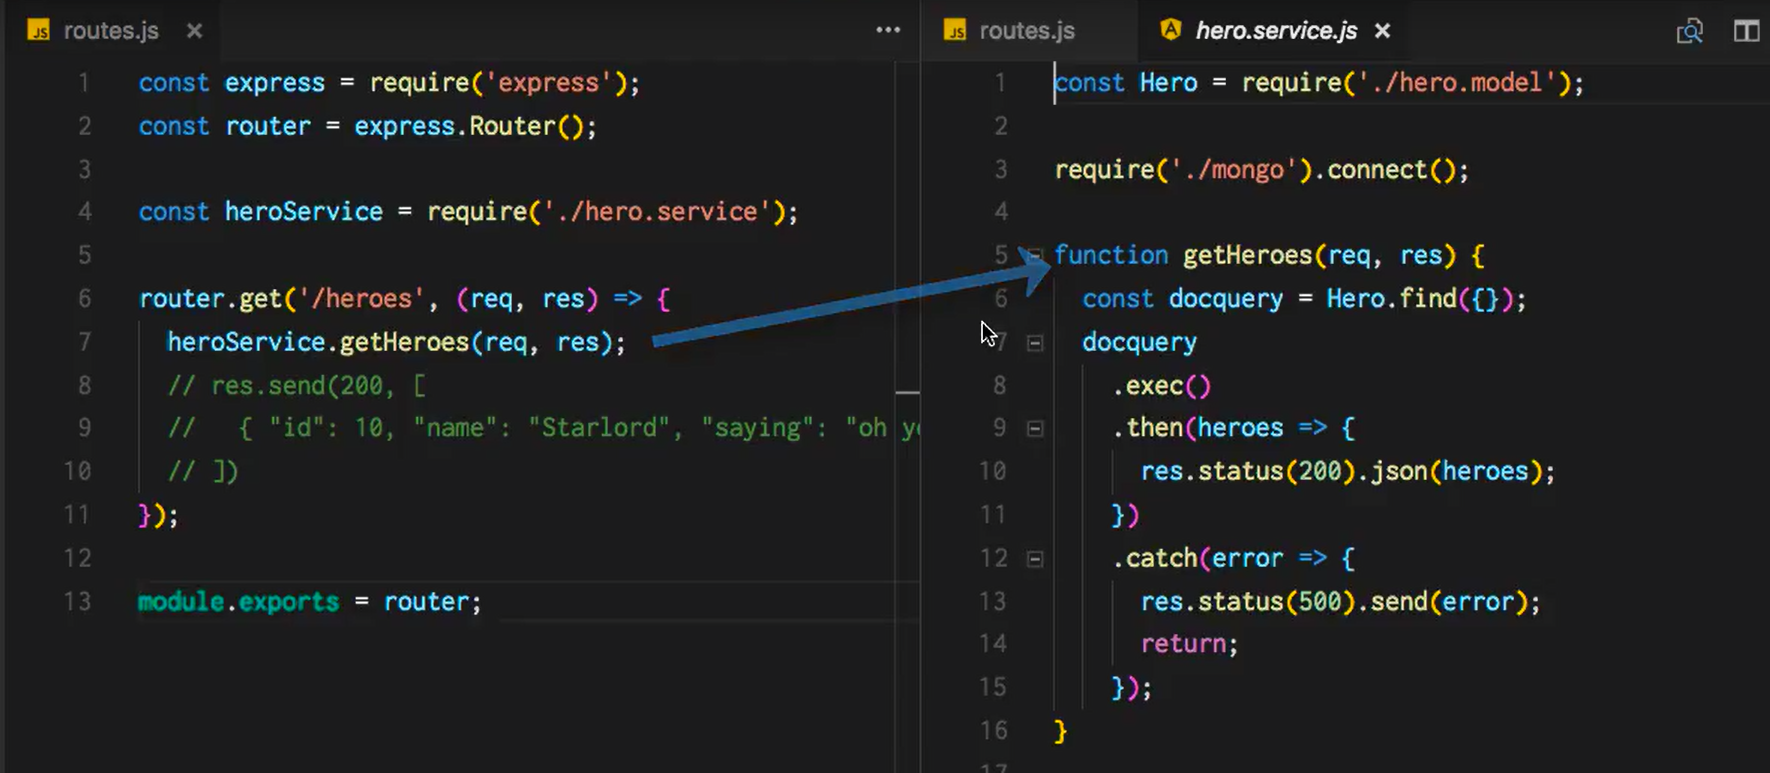 routes.js och hero.service.js i Visual Studio Code